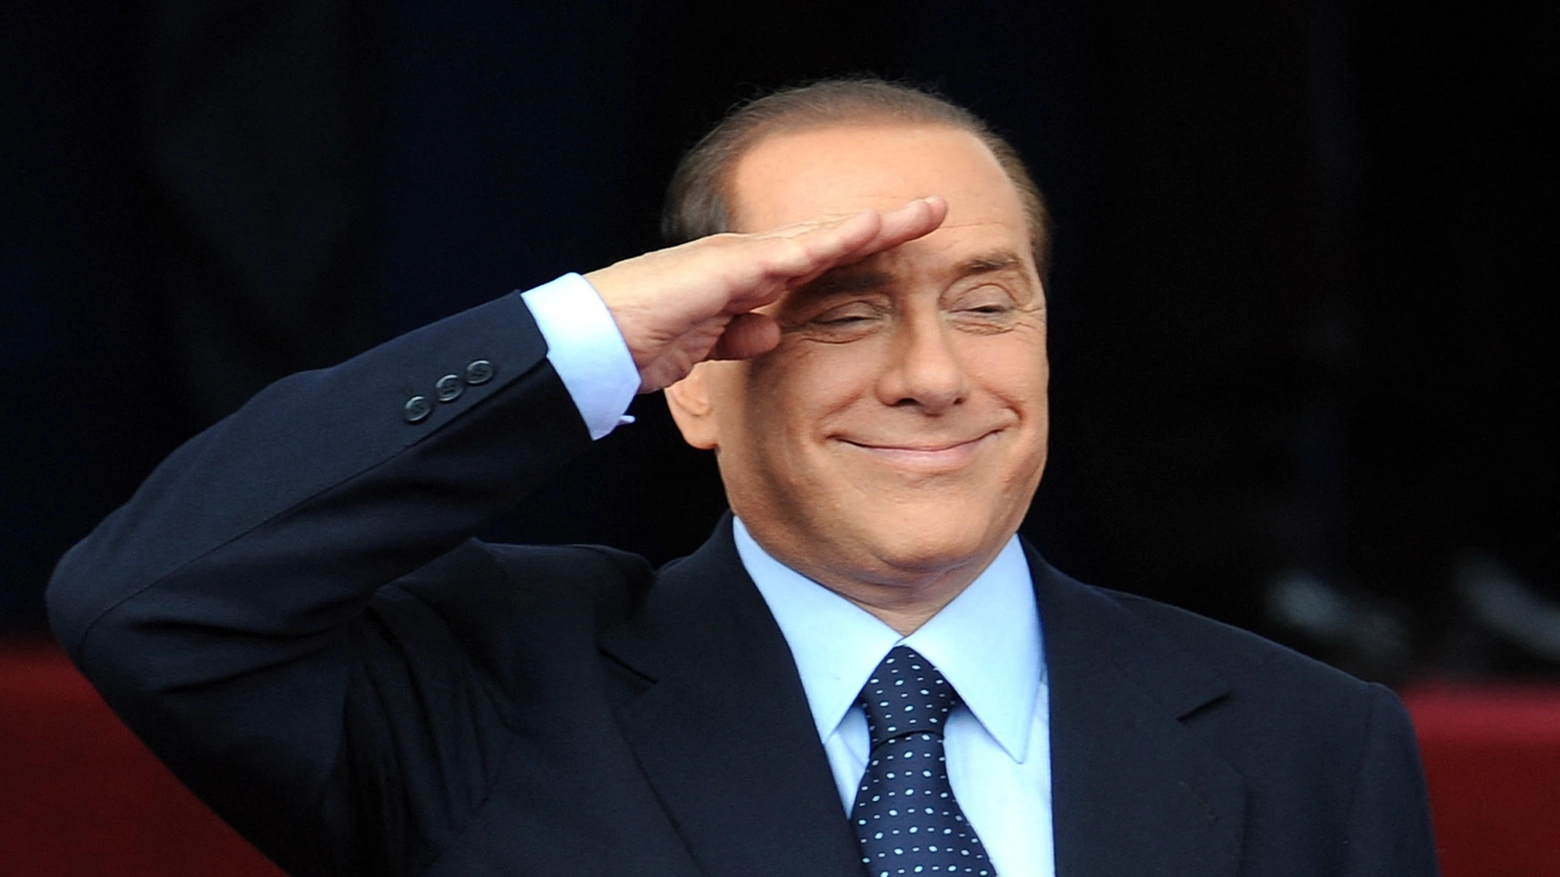 Roma, 2009. Silvio Berlusconi saluta alla parata del 2 giugno (Afp)